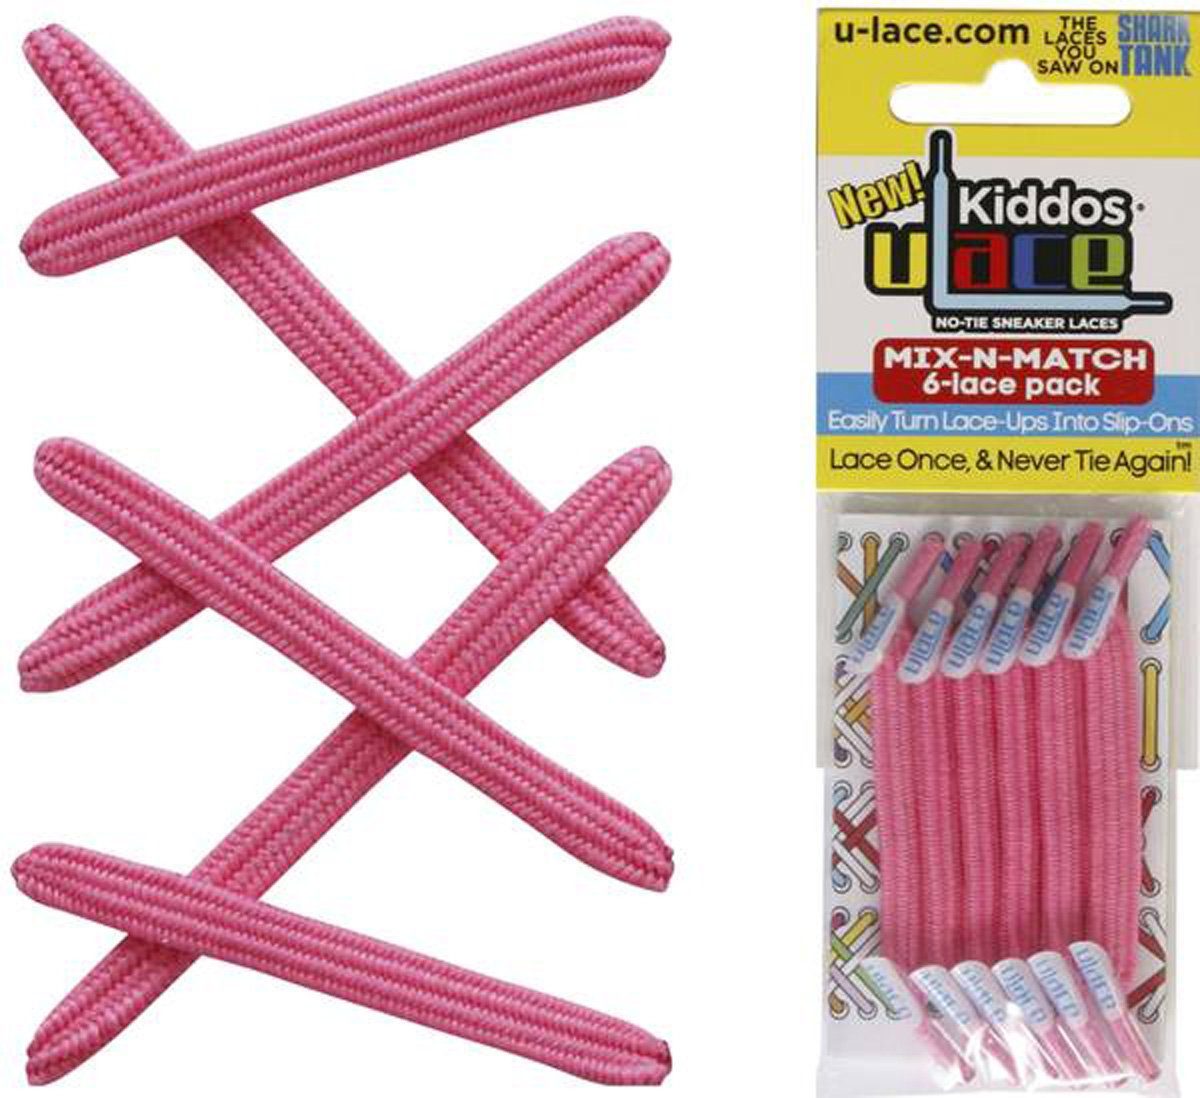 U-Laces Schnürsenkel Kiddos - elastische Schnürsenkel mit Wiederhaken für Kinder Shocking Pink